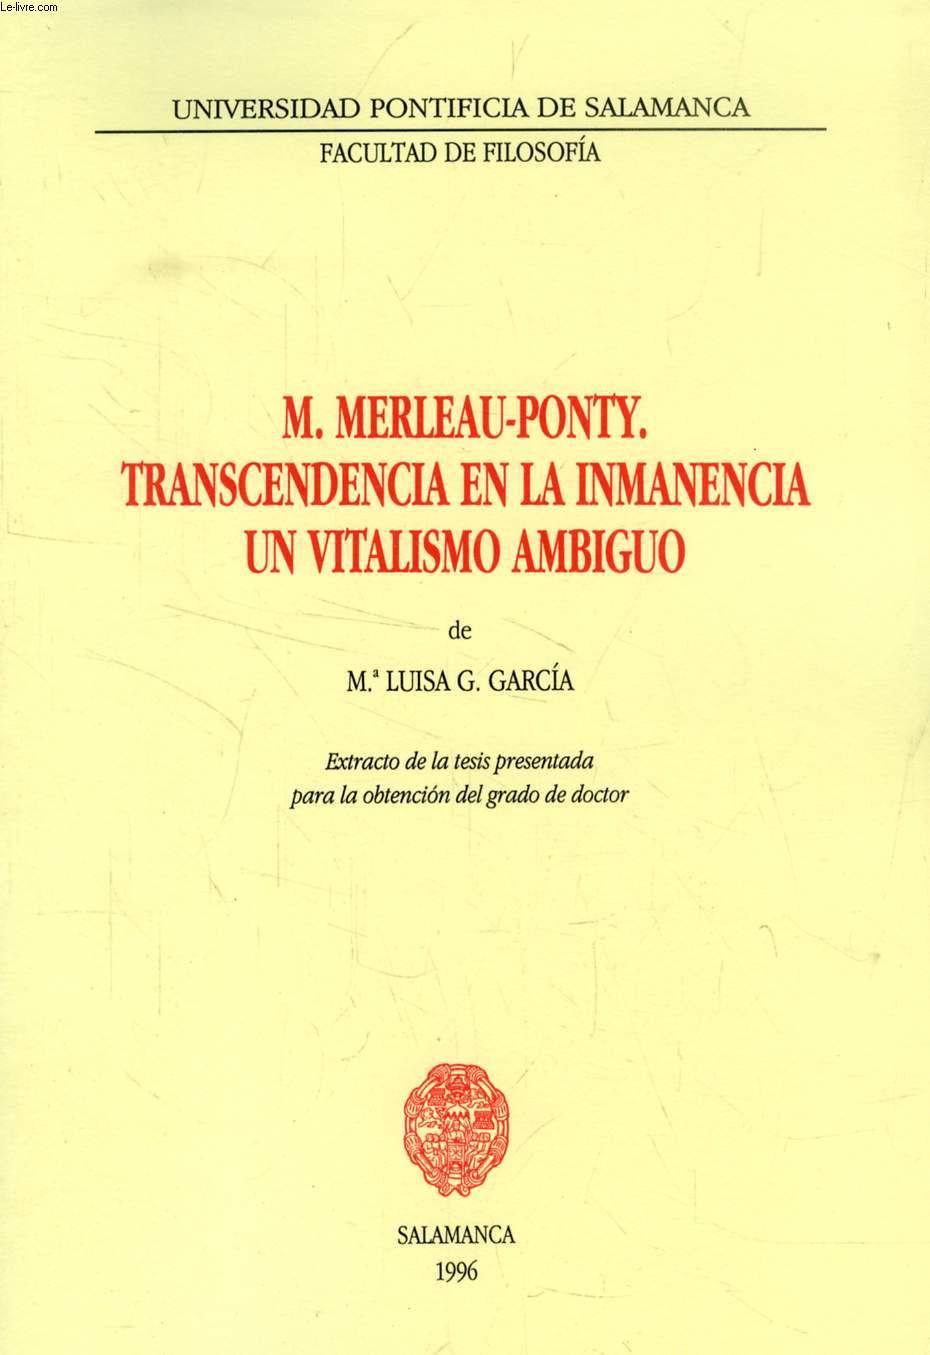 M. MERLEAU-PONTY, TRANSCENDENCIA EN LA INMANENCIA, UN VITALISMO AMBIGUO (EXTRACTO DE LA TESIS)